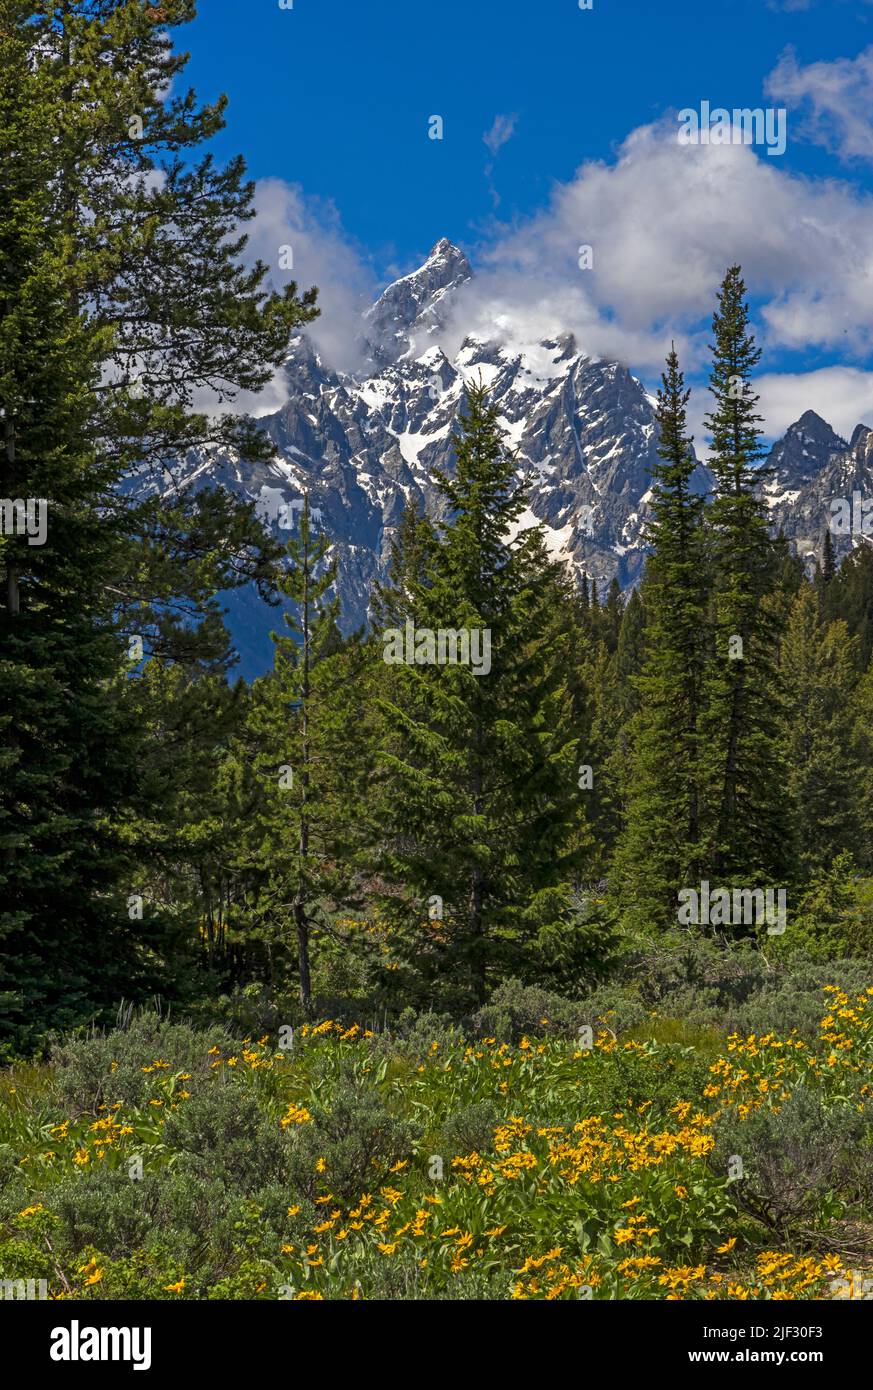 Les nuages flottent près de Grand Teton Peak dans le parc national de Grand Teton, Wyoming, États-Unis avec un premier plan de fleurs sauvages de Balsamroot d'Arrowleaf. Banque D'Images